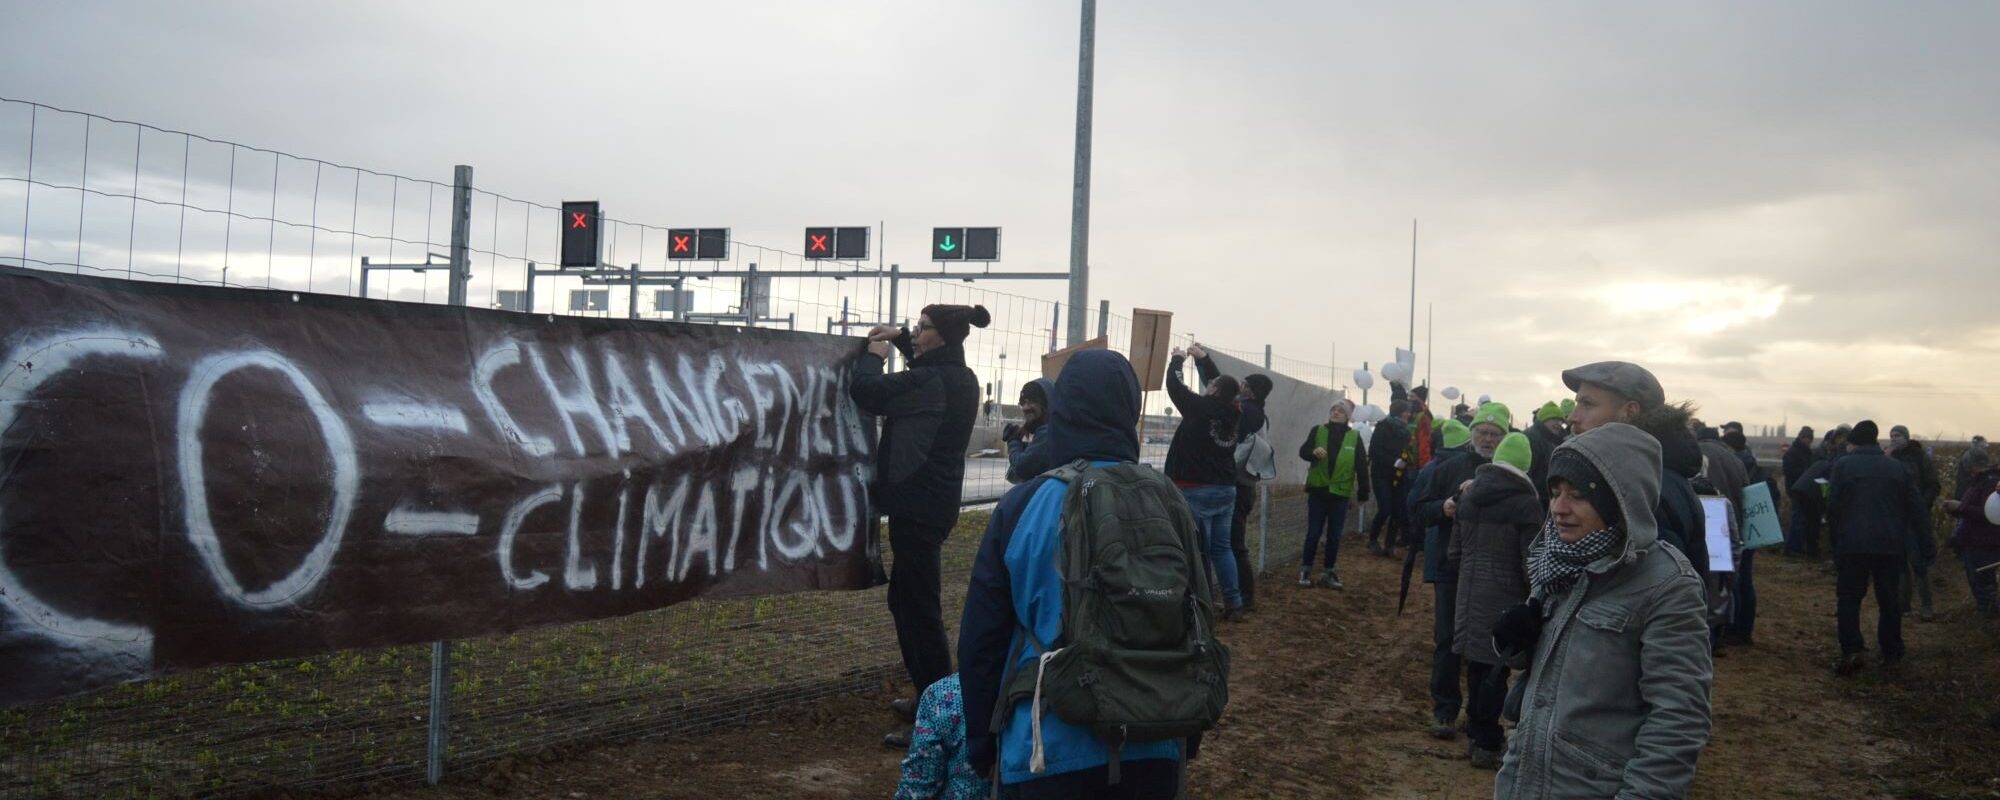 Une centaine d’écologistes, autour des portes ouvertes du GCO, interpellent les participants